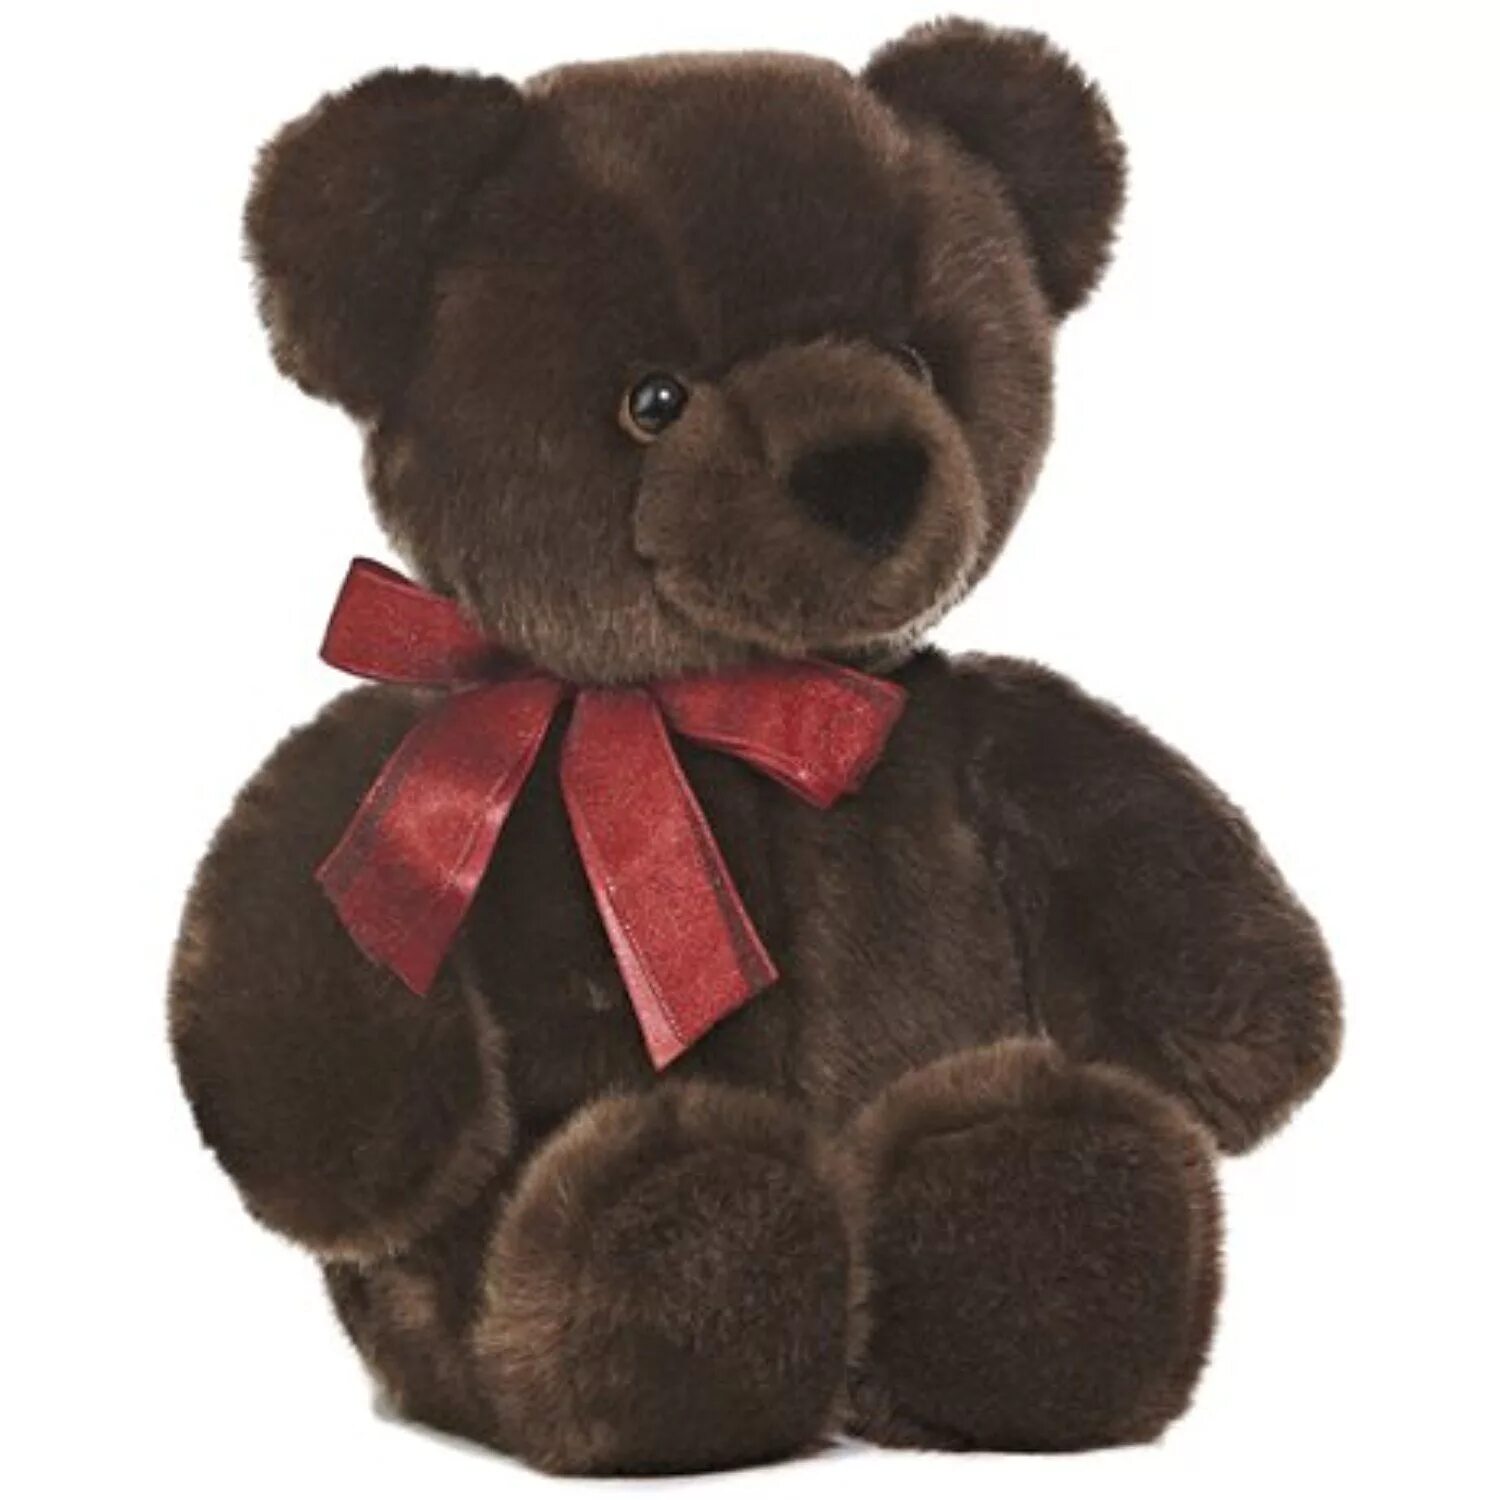 A brown teddy bear. Плюшевый мишка коричневый. Медвежонок игрушка темно-коричневый. Плюшевый медведь коричневого цвета. Плюшевый мишка темно коричневый.